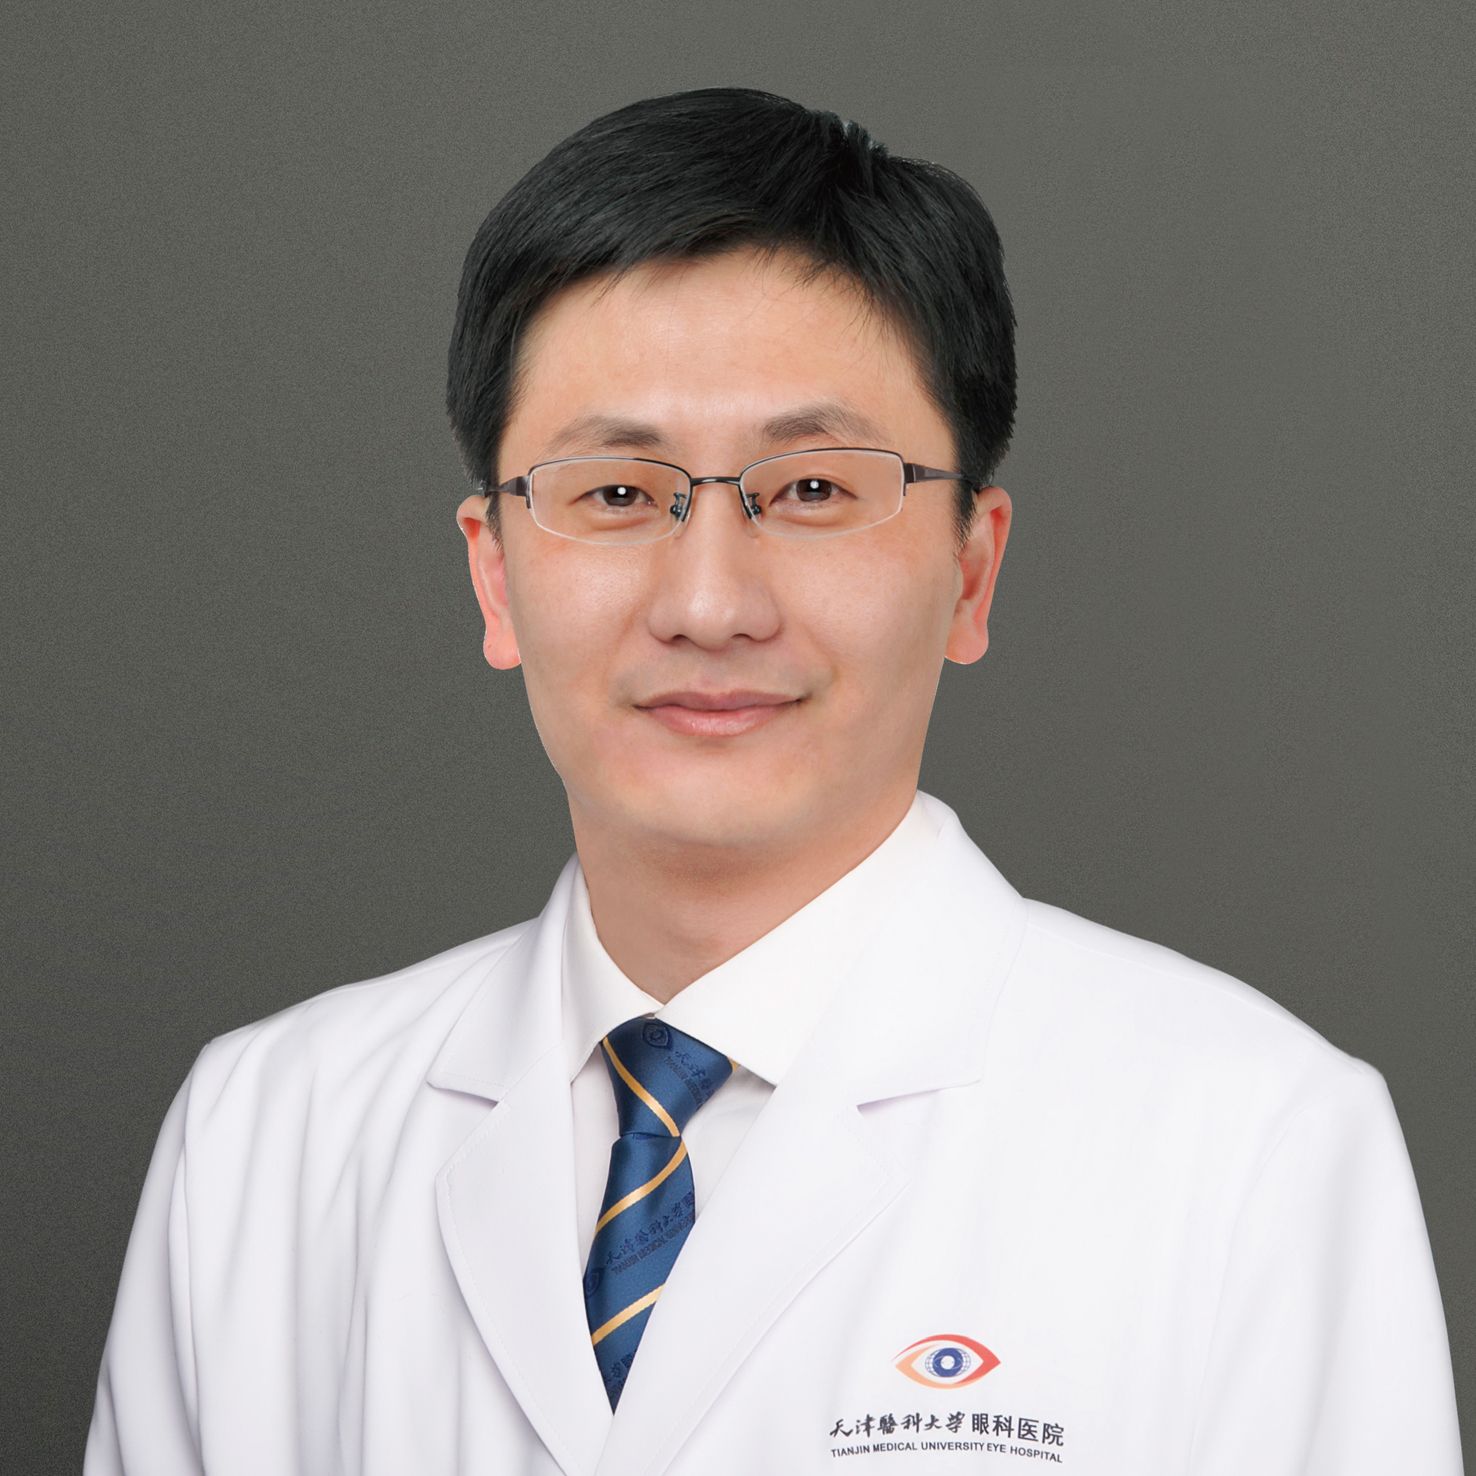 Xuehan Qian, MD, PhD

Credit: Tianjin Medical University